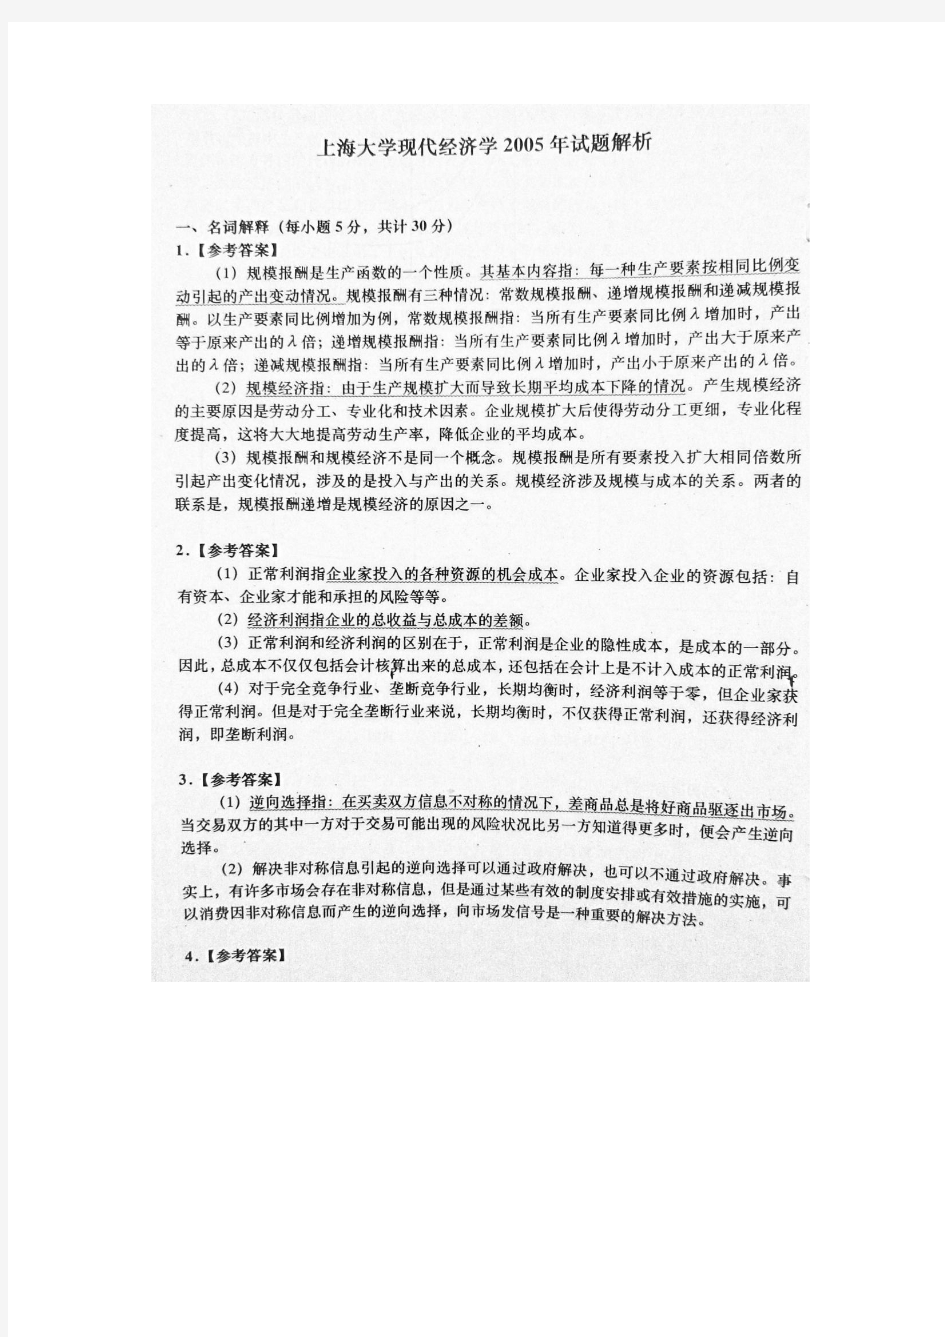 上海大学考研真题(2005年现代经济学)